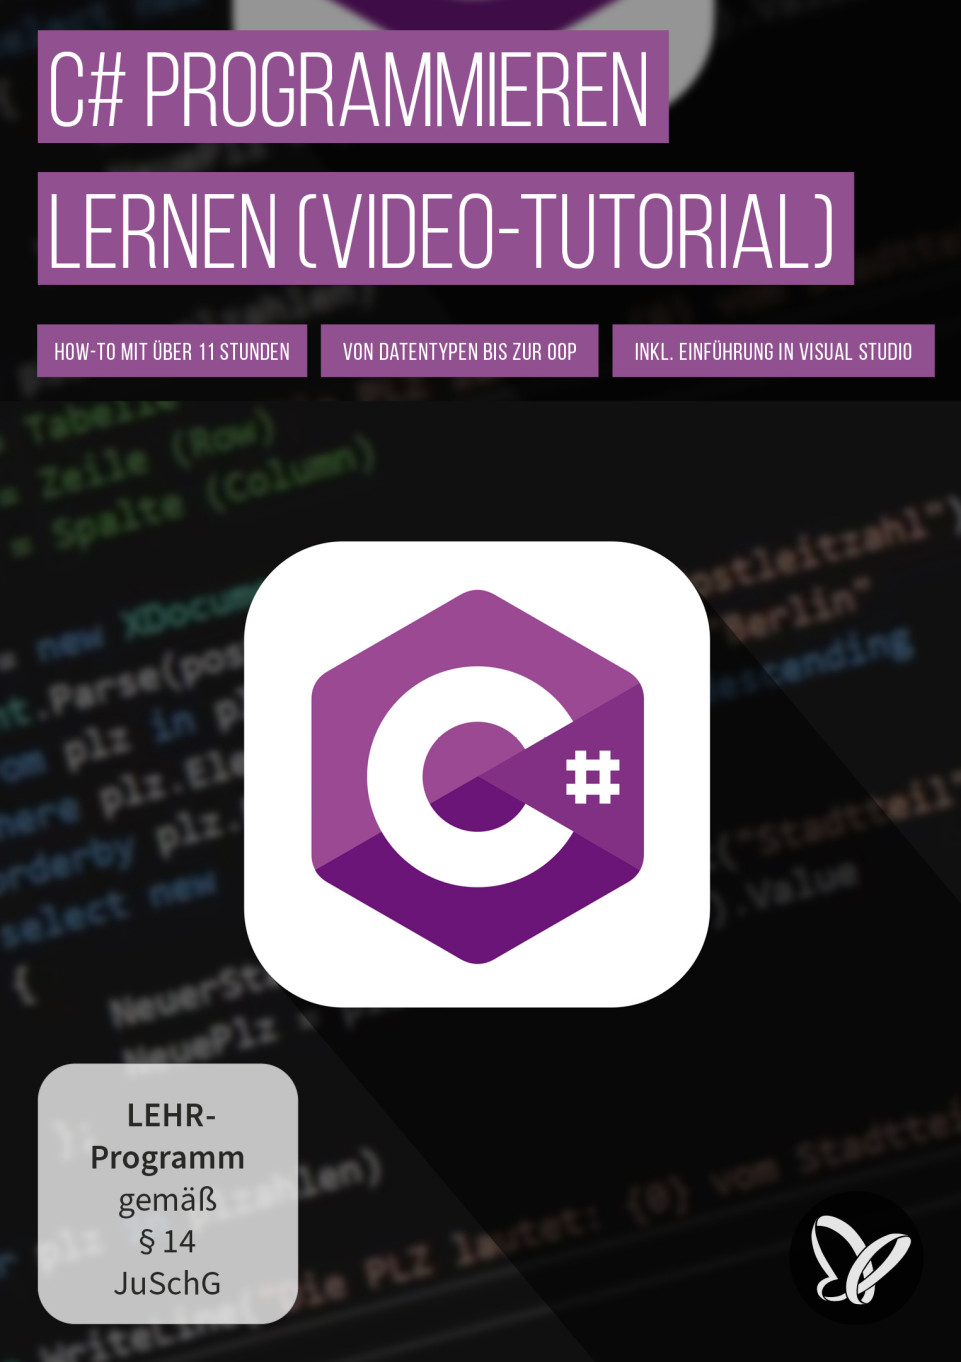 C# programmieren lernen – von Datentypen bis zur objektorientierten Programmierung (Video-Tutorial)